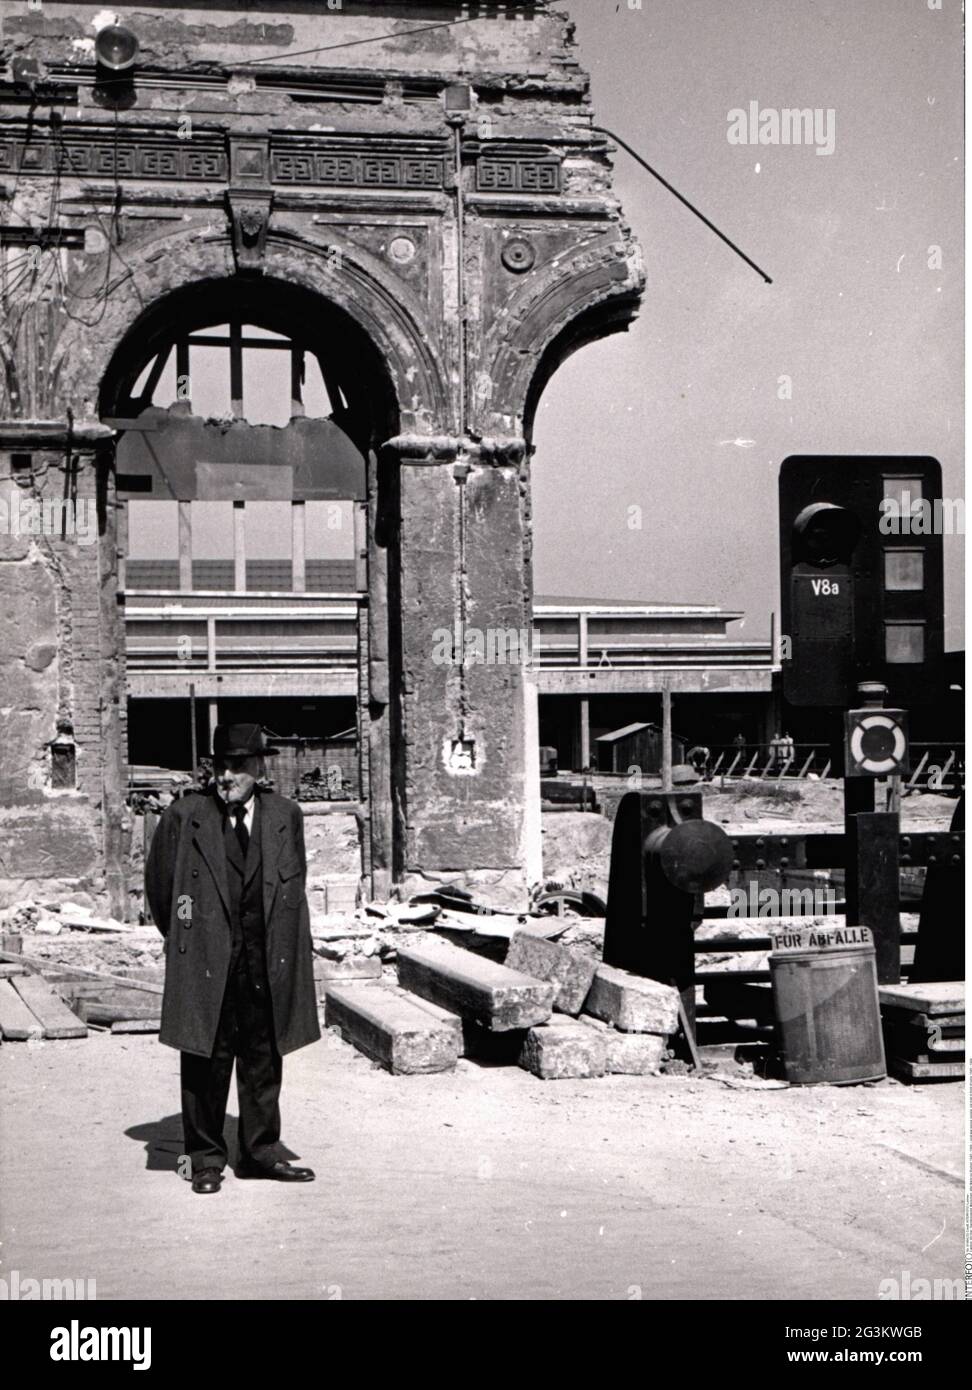 Période de l'après-guerre, personnes, vieil homme devant les ruines, 1945 - 1949, USAGE ÉDITORIAL EXCLUSIF Banque D'Images